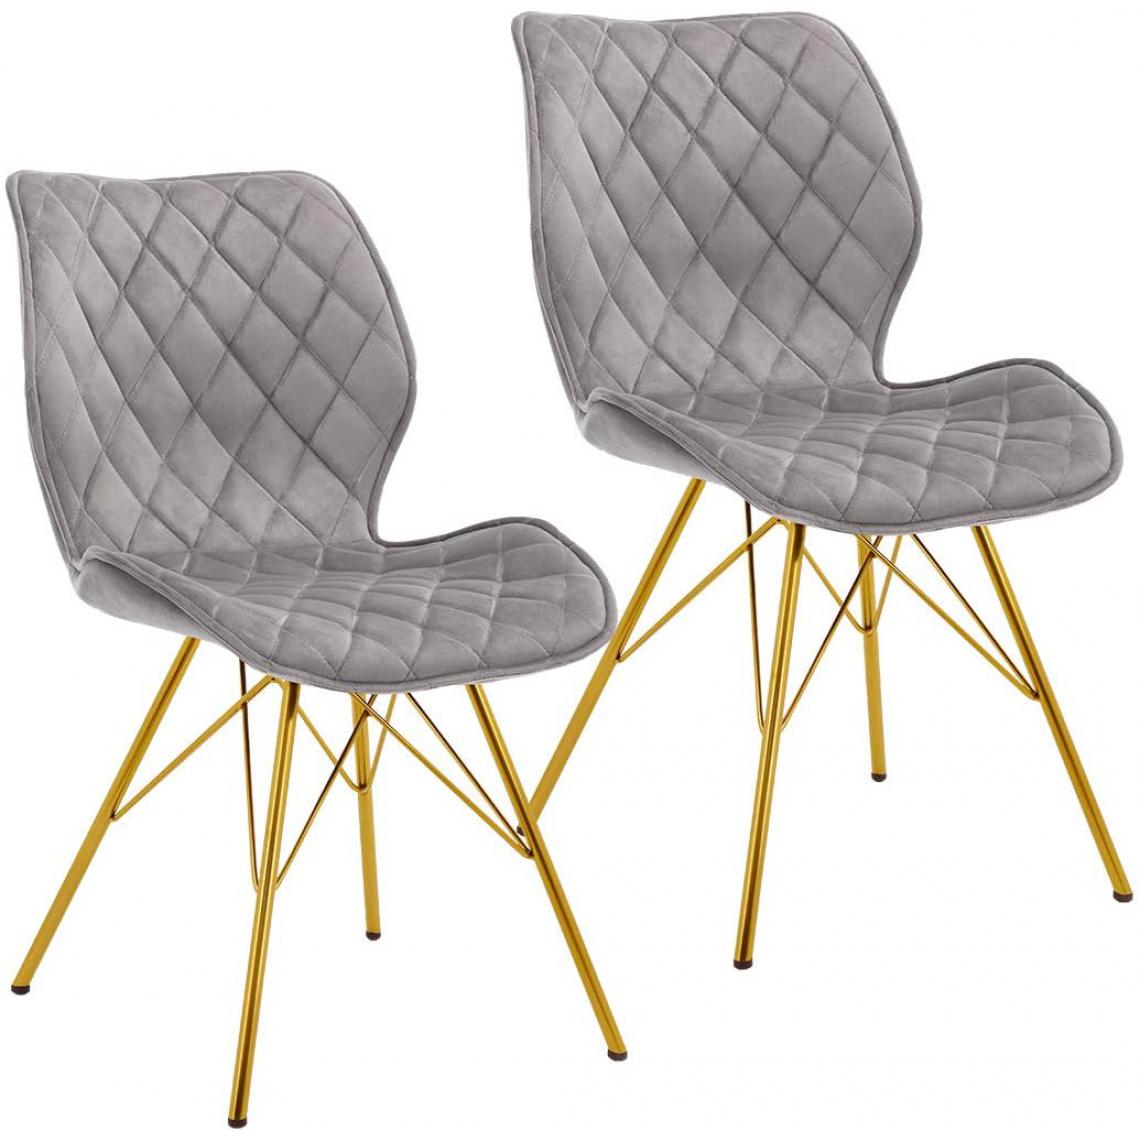 Decoshop26 - 2 chaises de salle à manger design rétro en tissu velours gris pieds métal doré CDS09301 - Chaises